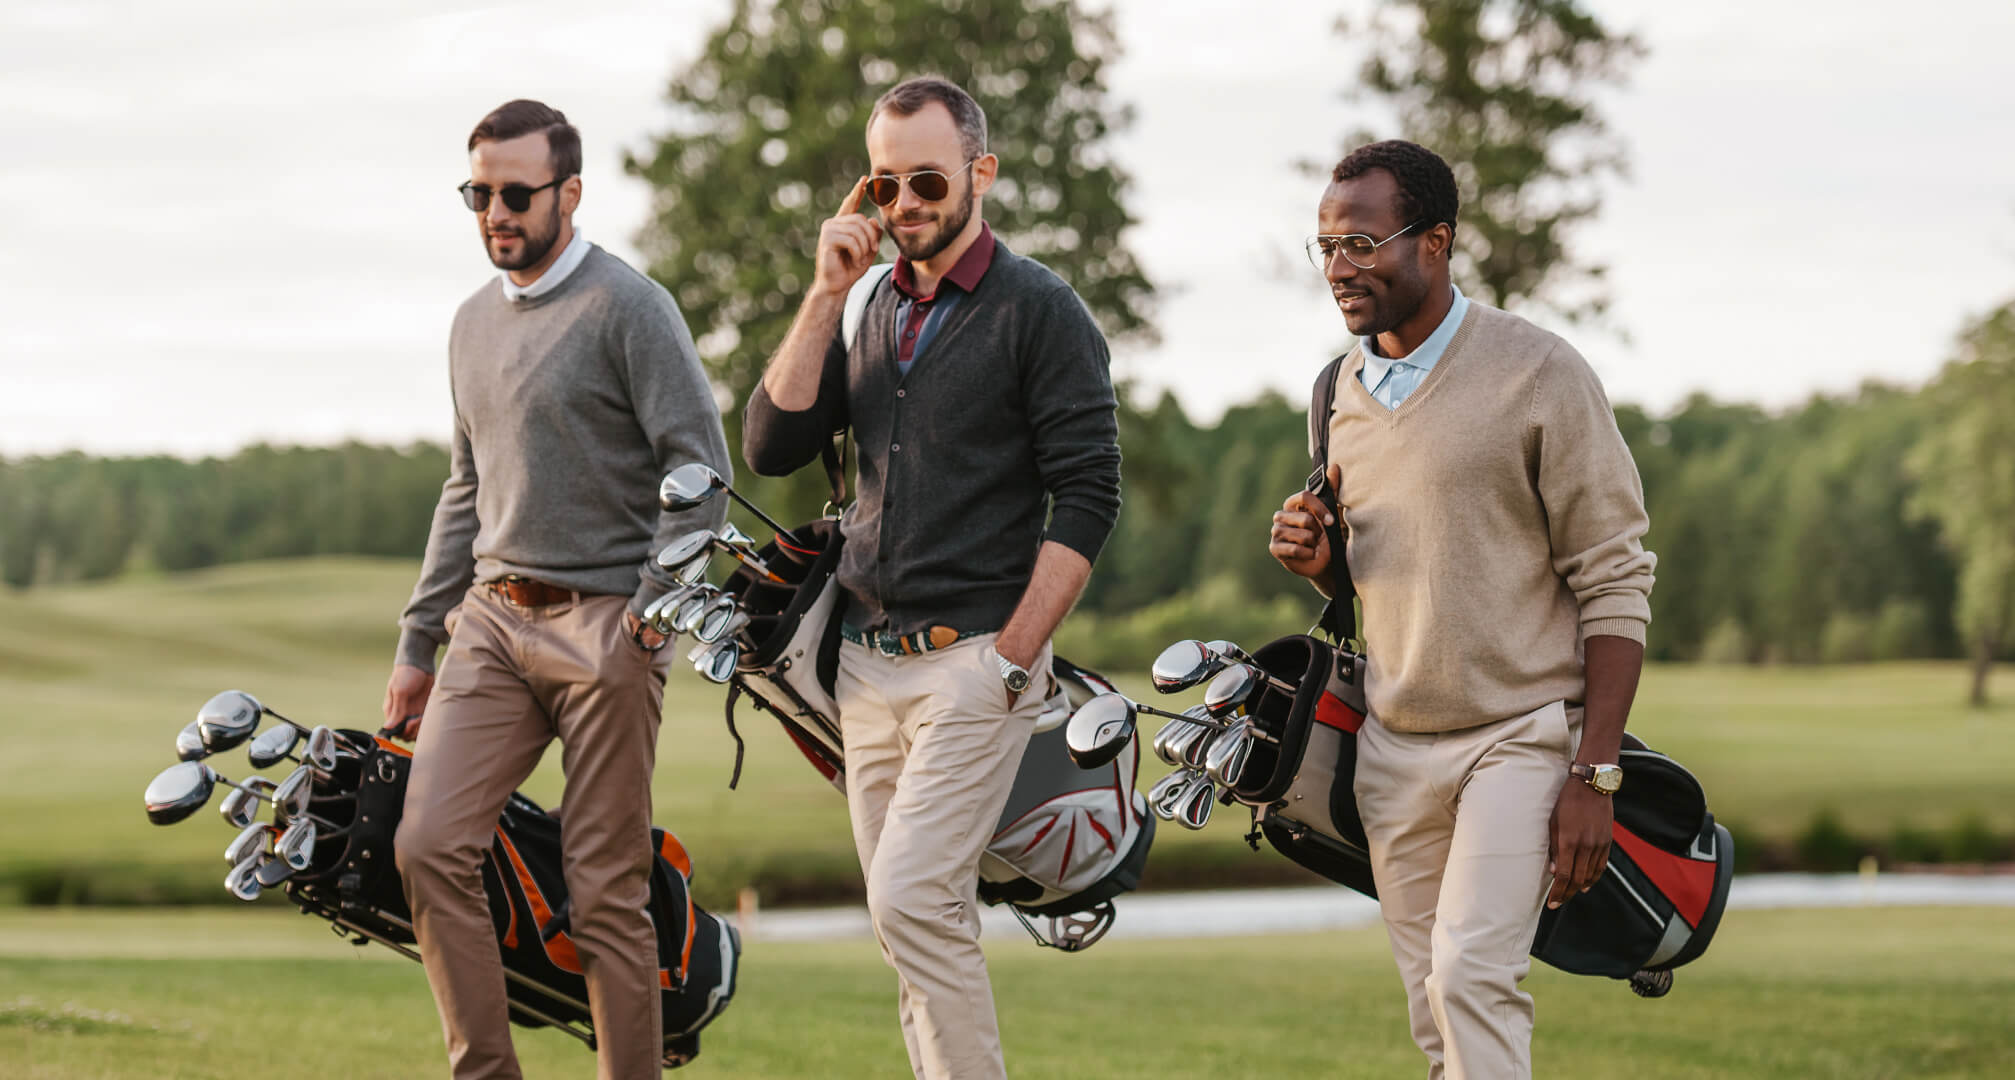 τρία άτομα παίζουν γκολφ φορώντας γυαλιά ηλίου και τσάντες του γκολφ